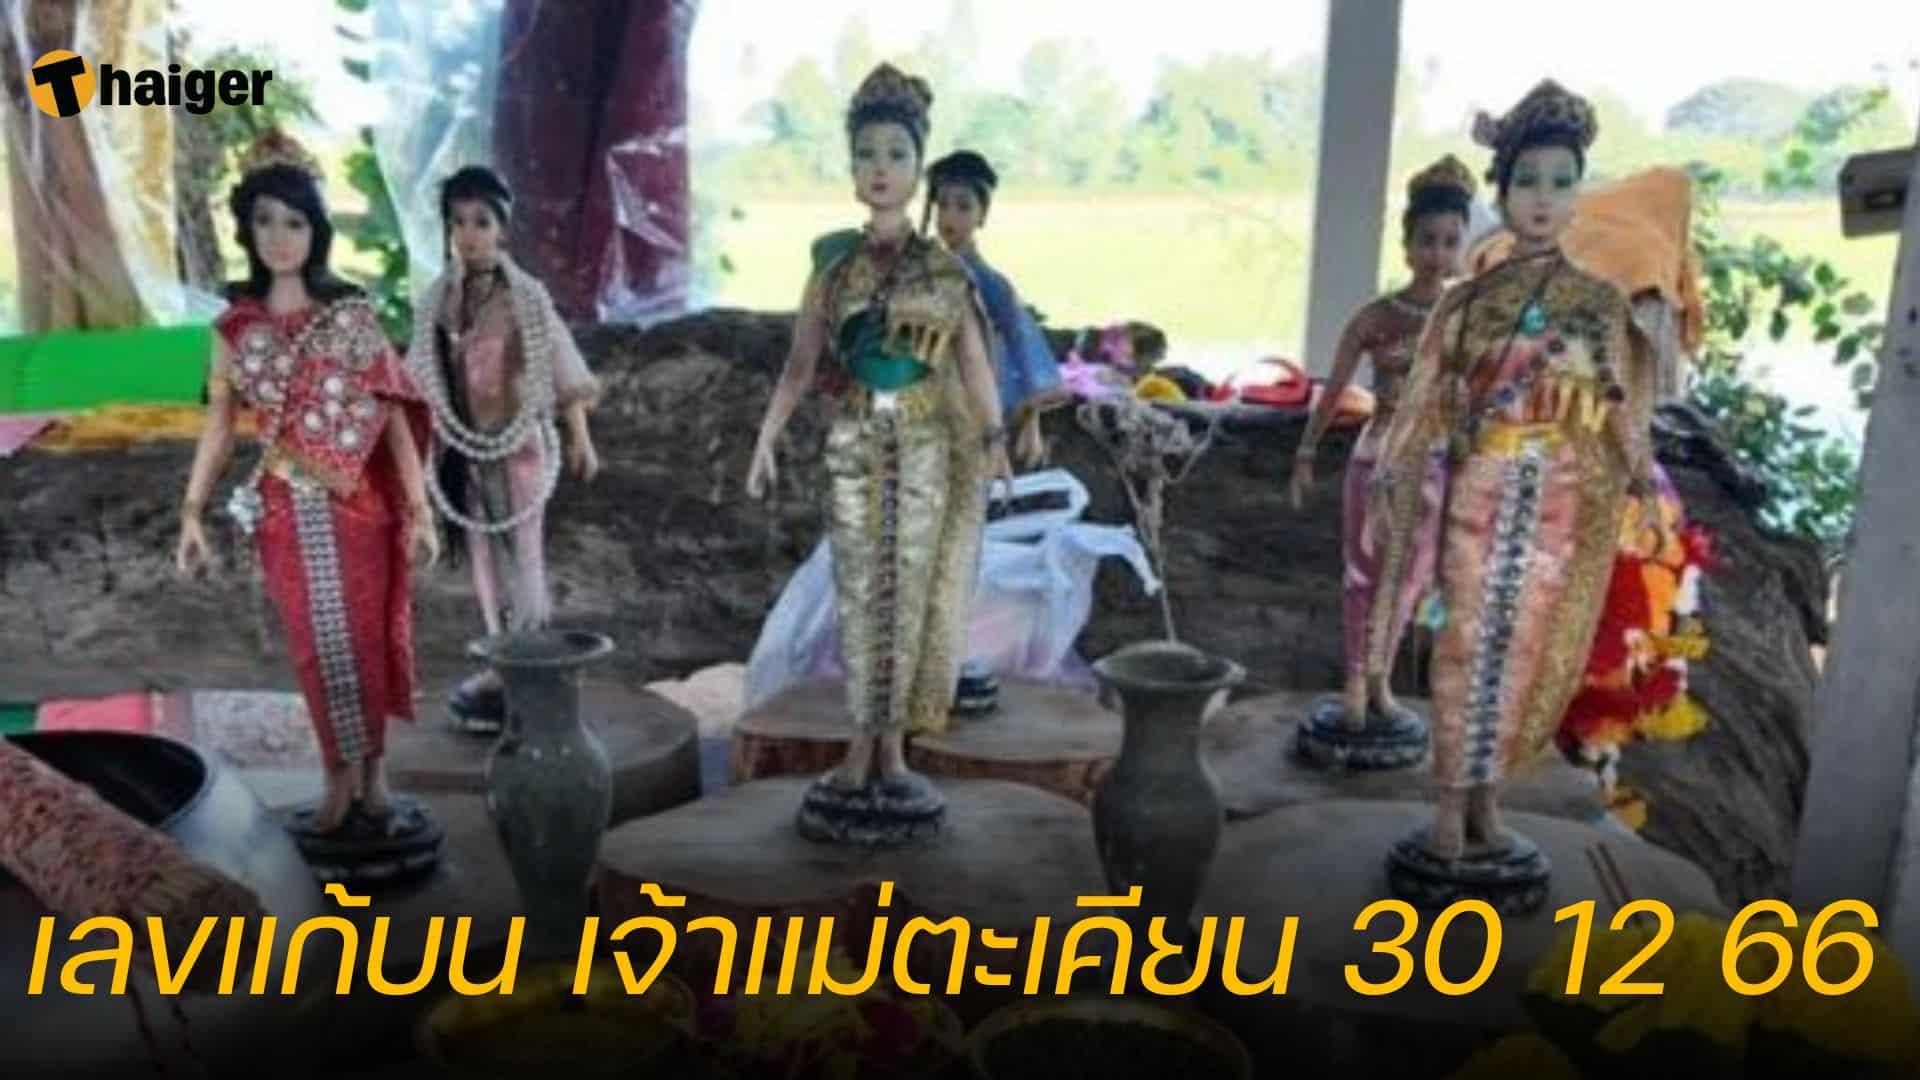 เลขแก้บน เจ้าแม่ตะเคียน 30 12 66 หลังงวดก่อน ถูกหวยกันยกหมู่บ้าน | Thaiger ข่าวไทย